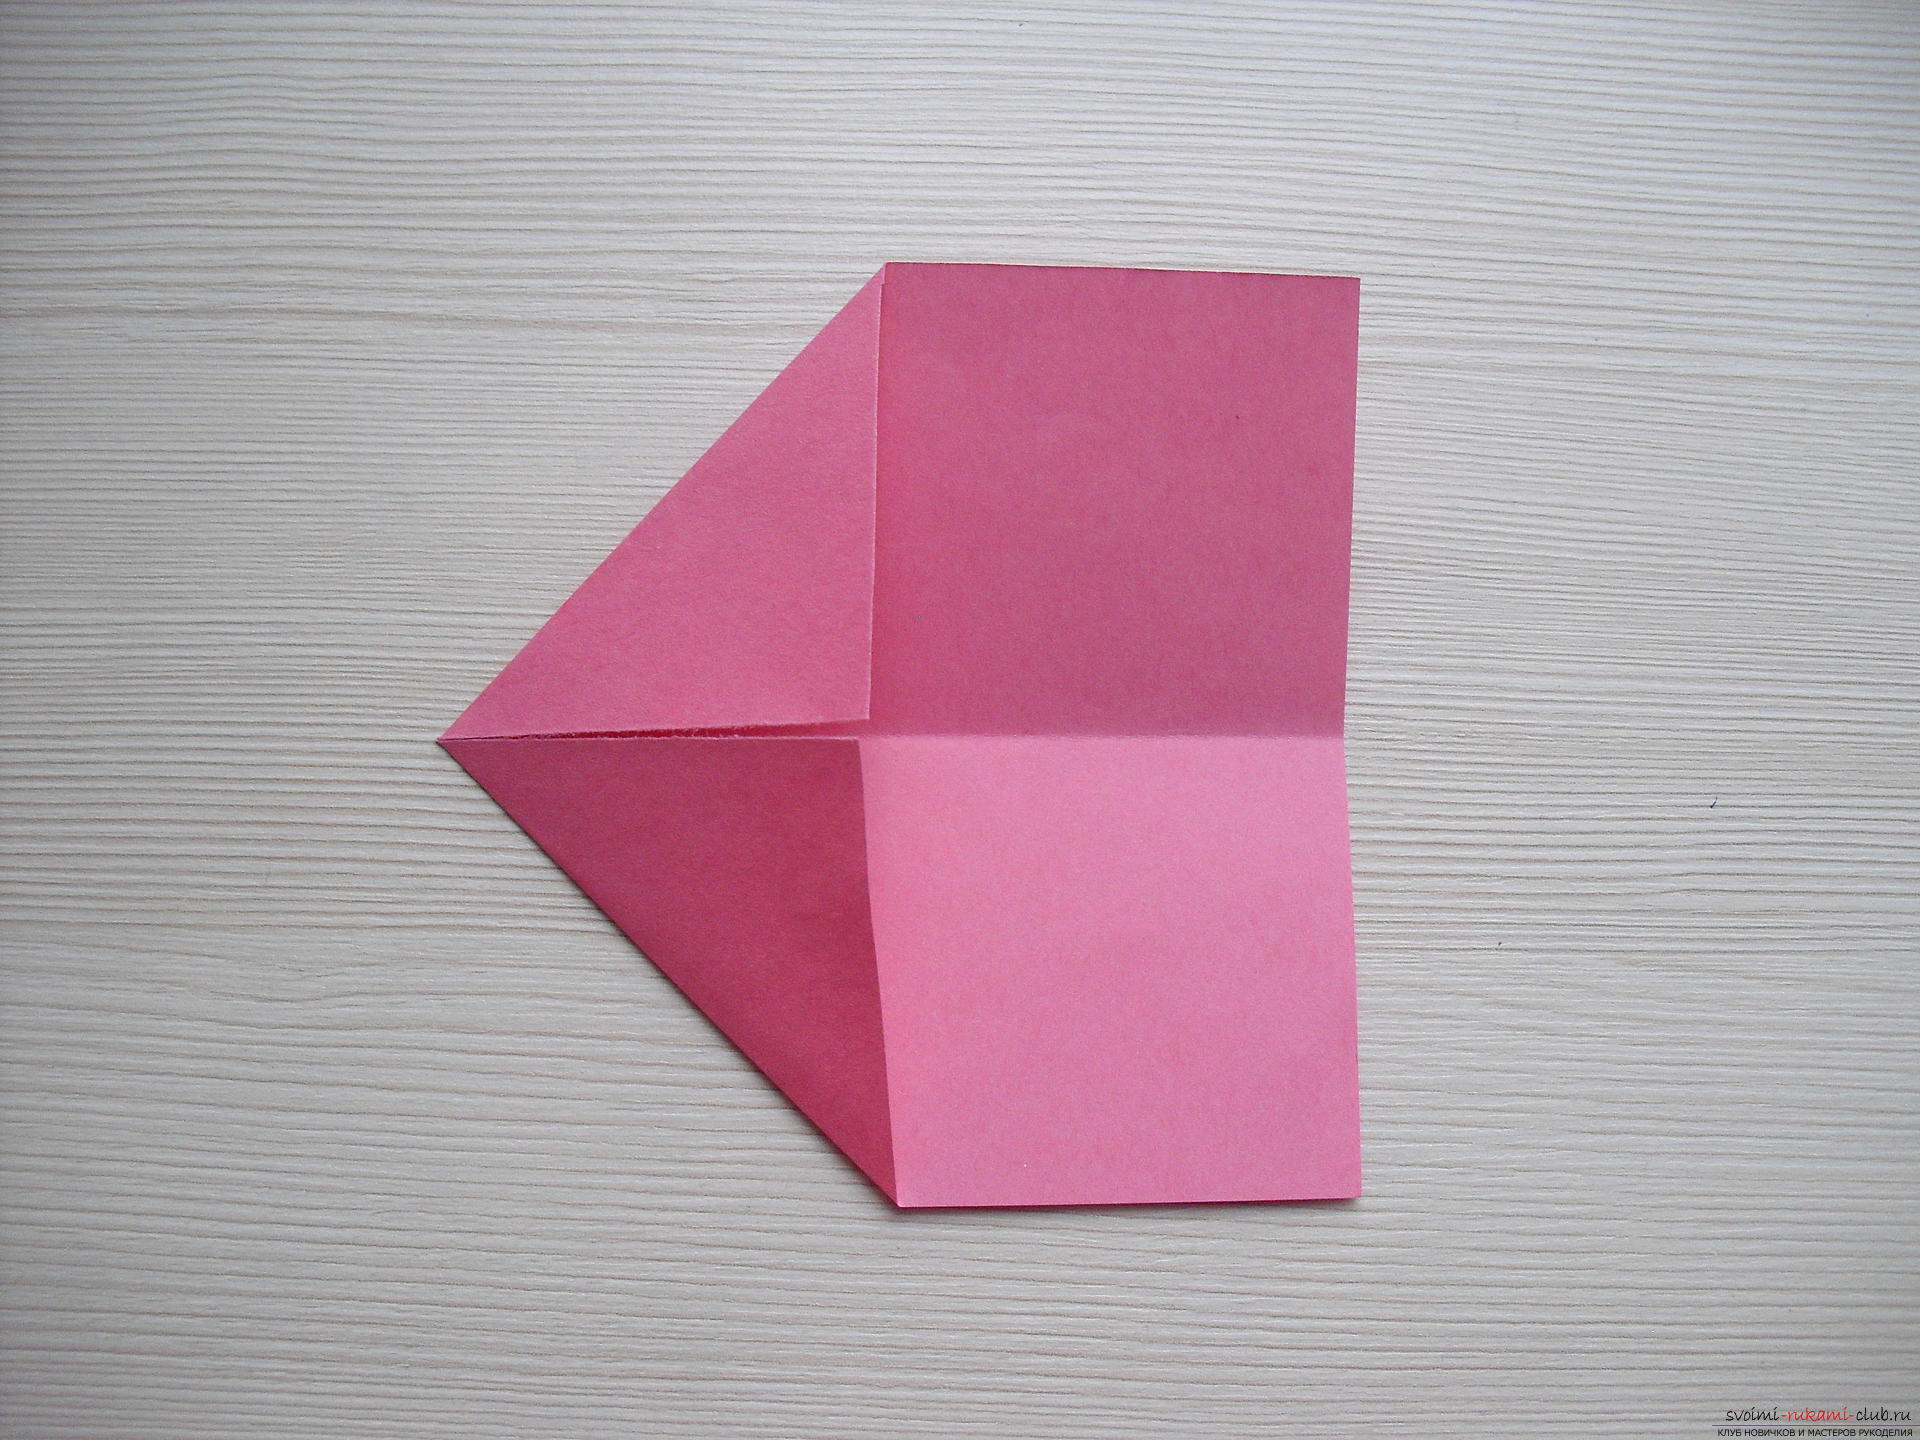 Этот мастер-класс расскажет как создать простое модульное оригами - трансформер.. Фото №4